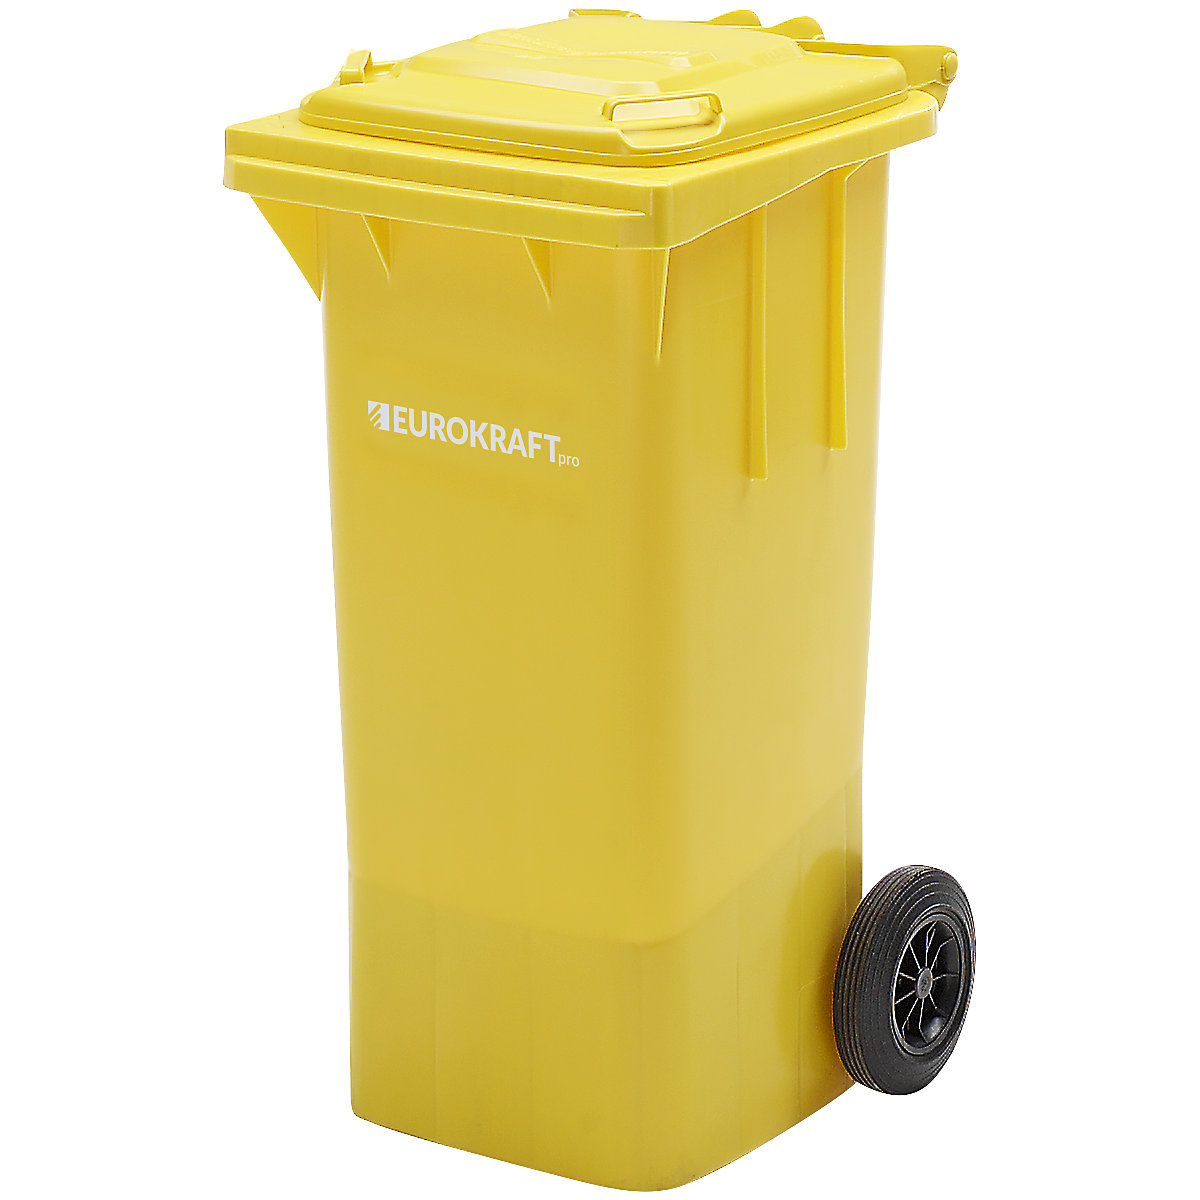 EUROKRAFTpro – Pubelă de gunoi din plastic, DIN EN 840 (Imagine produs 10)